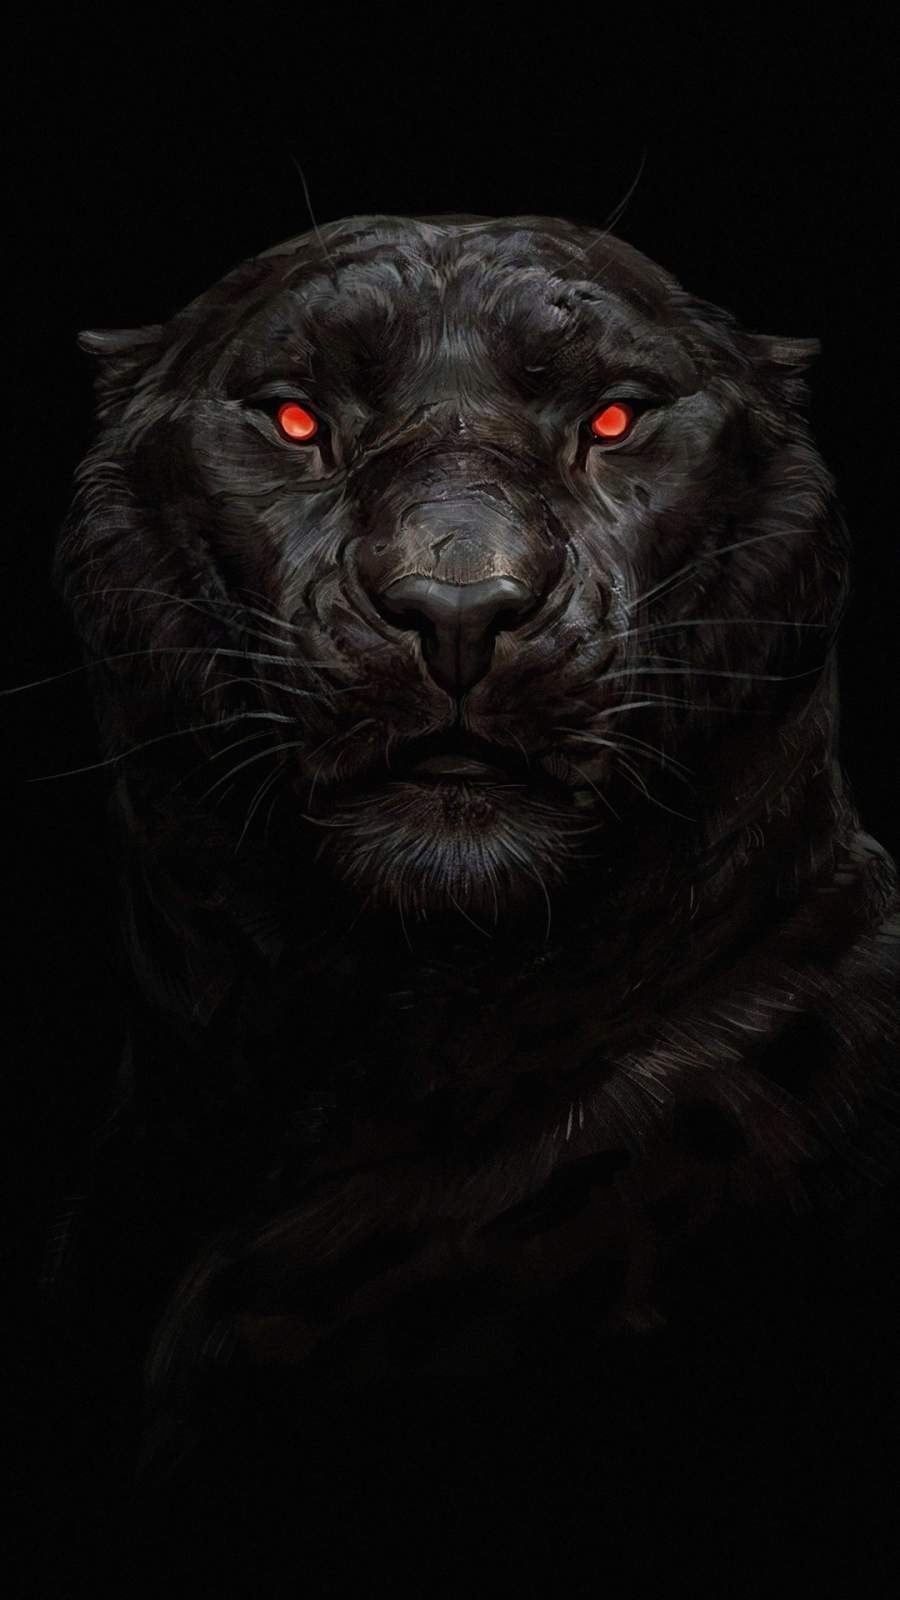  Black  Panther  Glowing  Eye iPhone Wallpaper  iPhone 